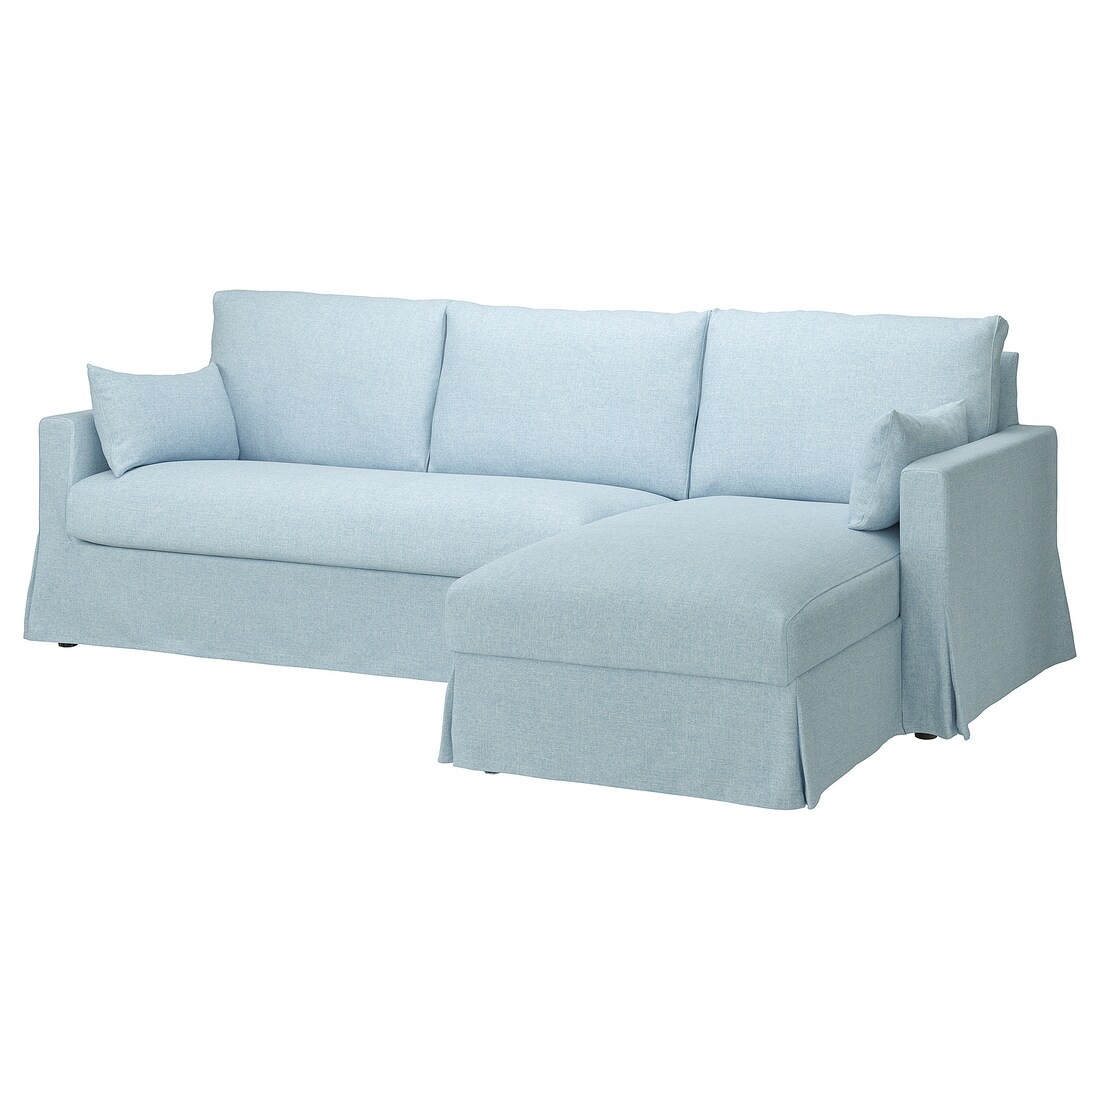 HYLTARP 3-х местный диван с козеткой, правосторонний, Киланда бледно-голубой